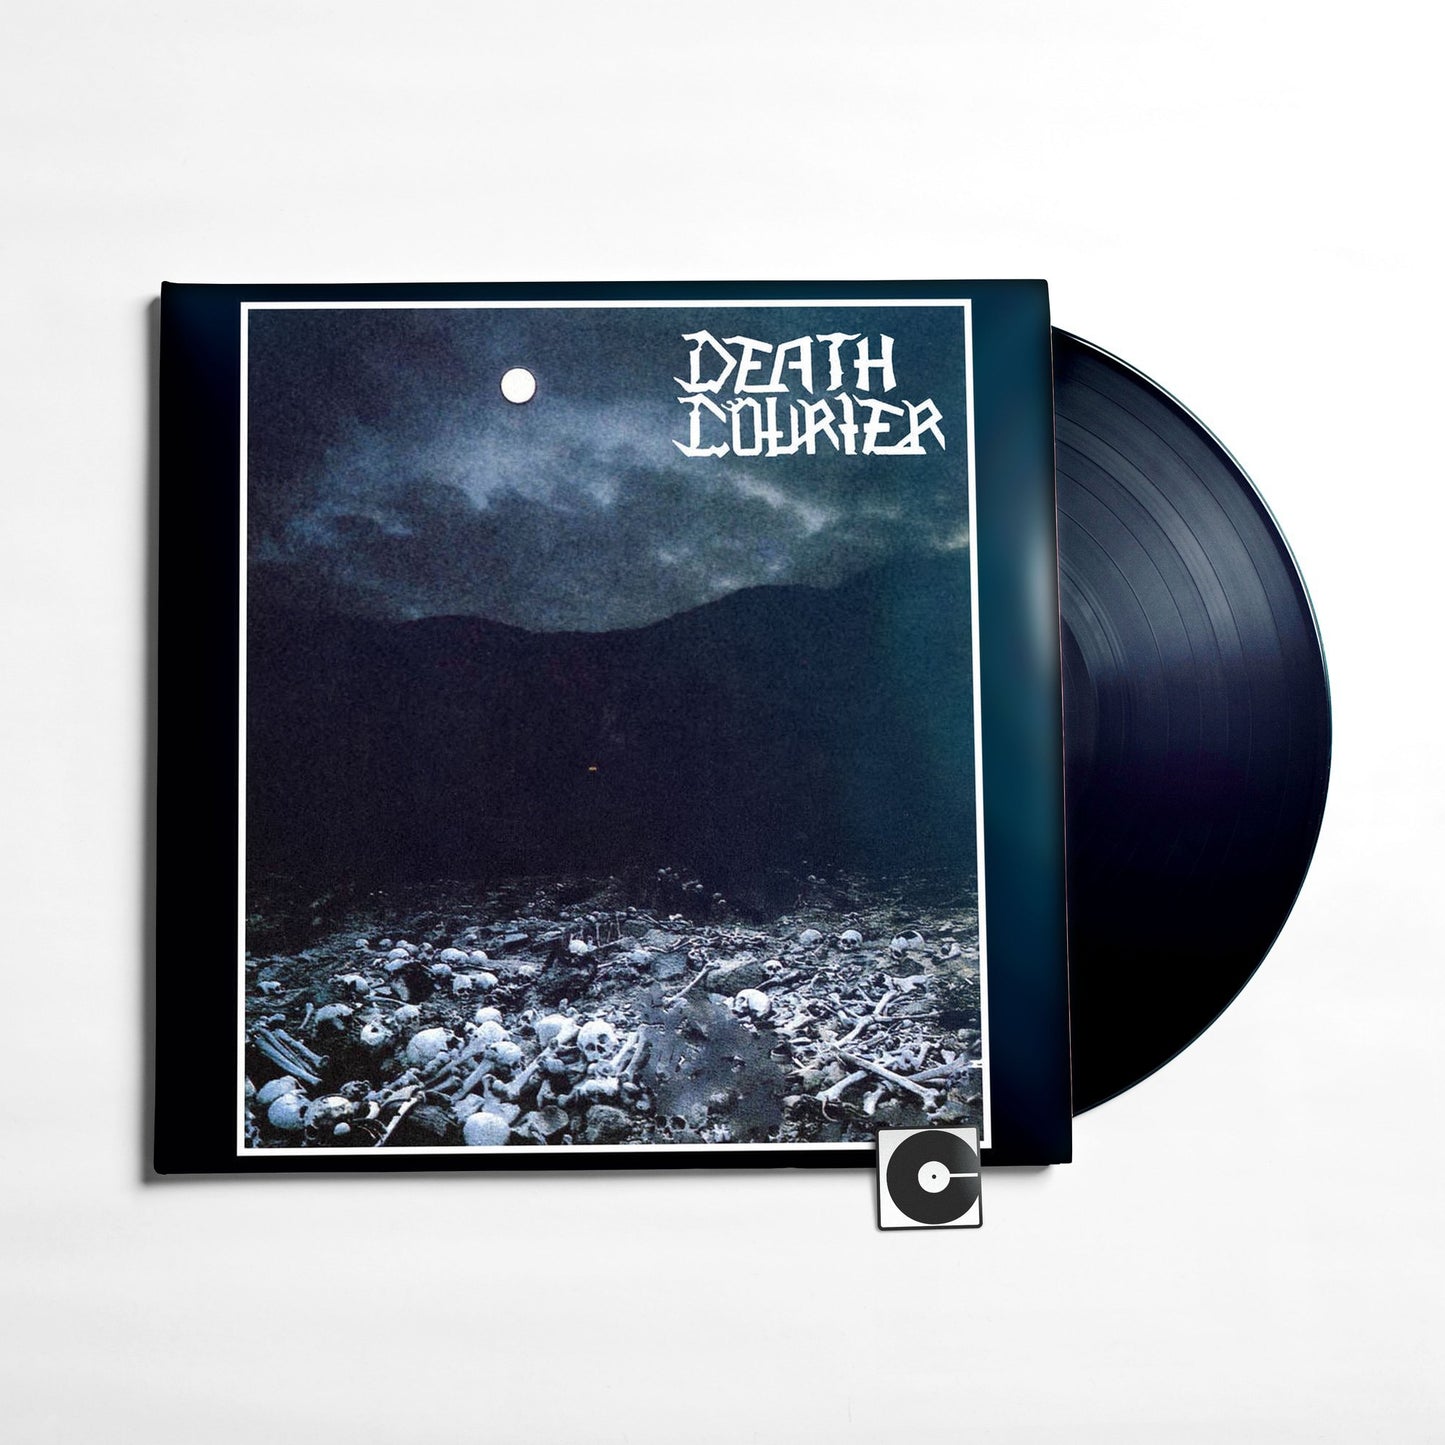 Death Courier - "Demise"